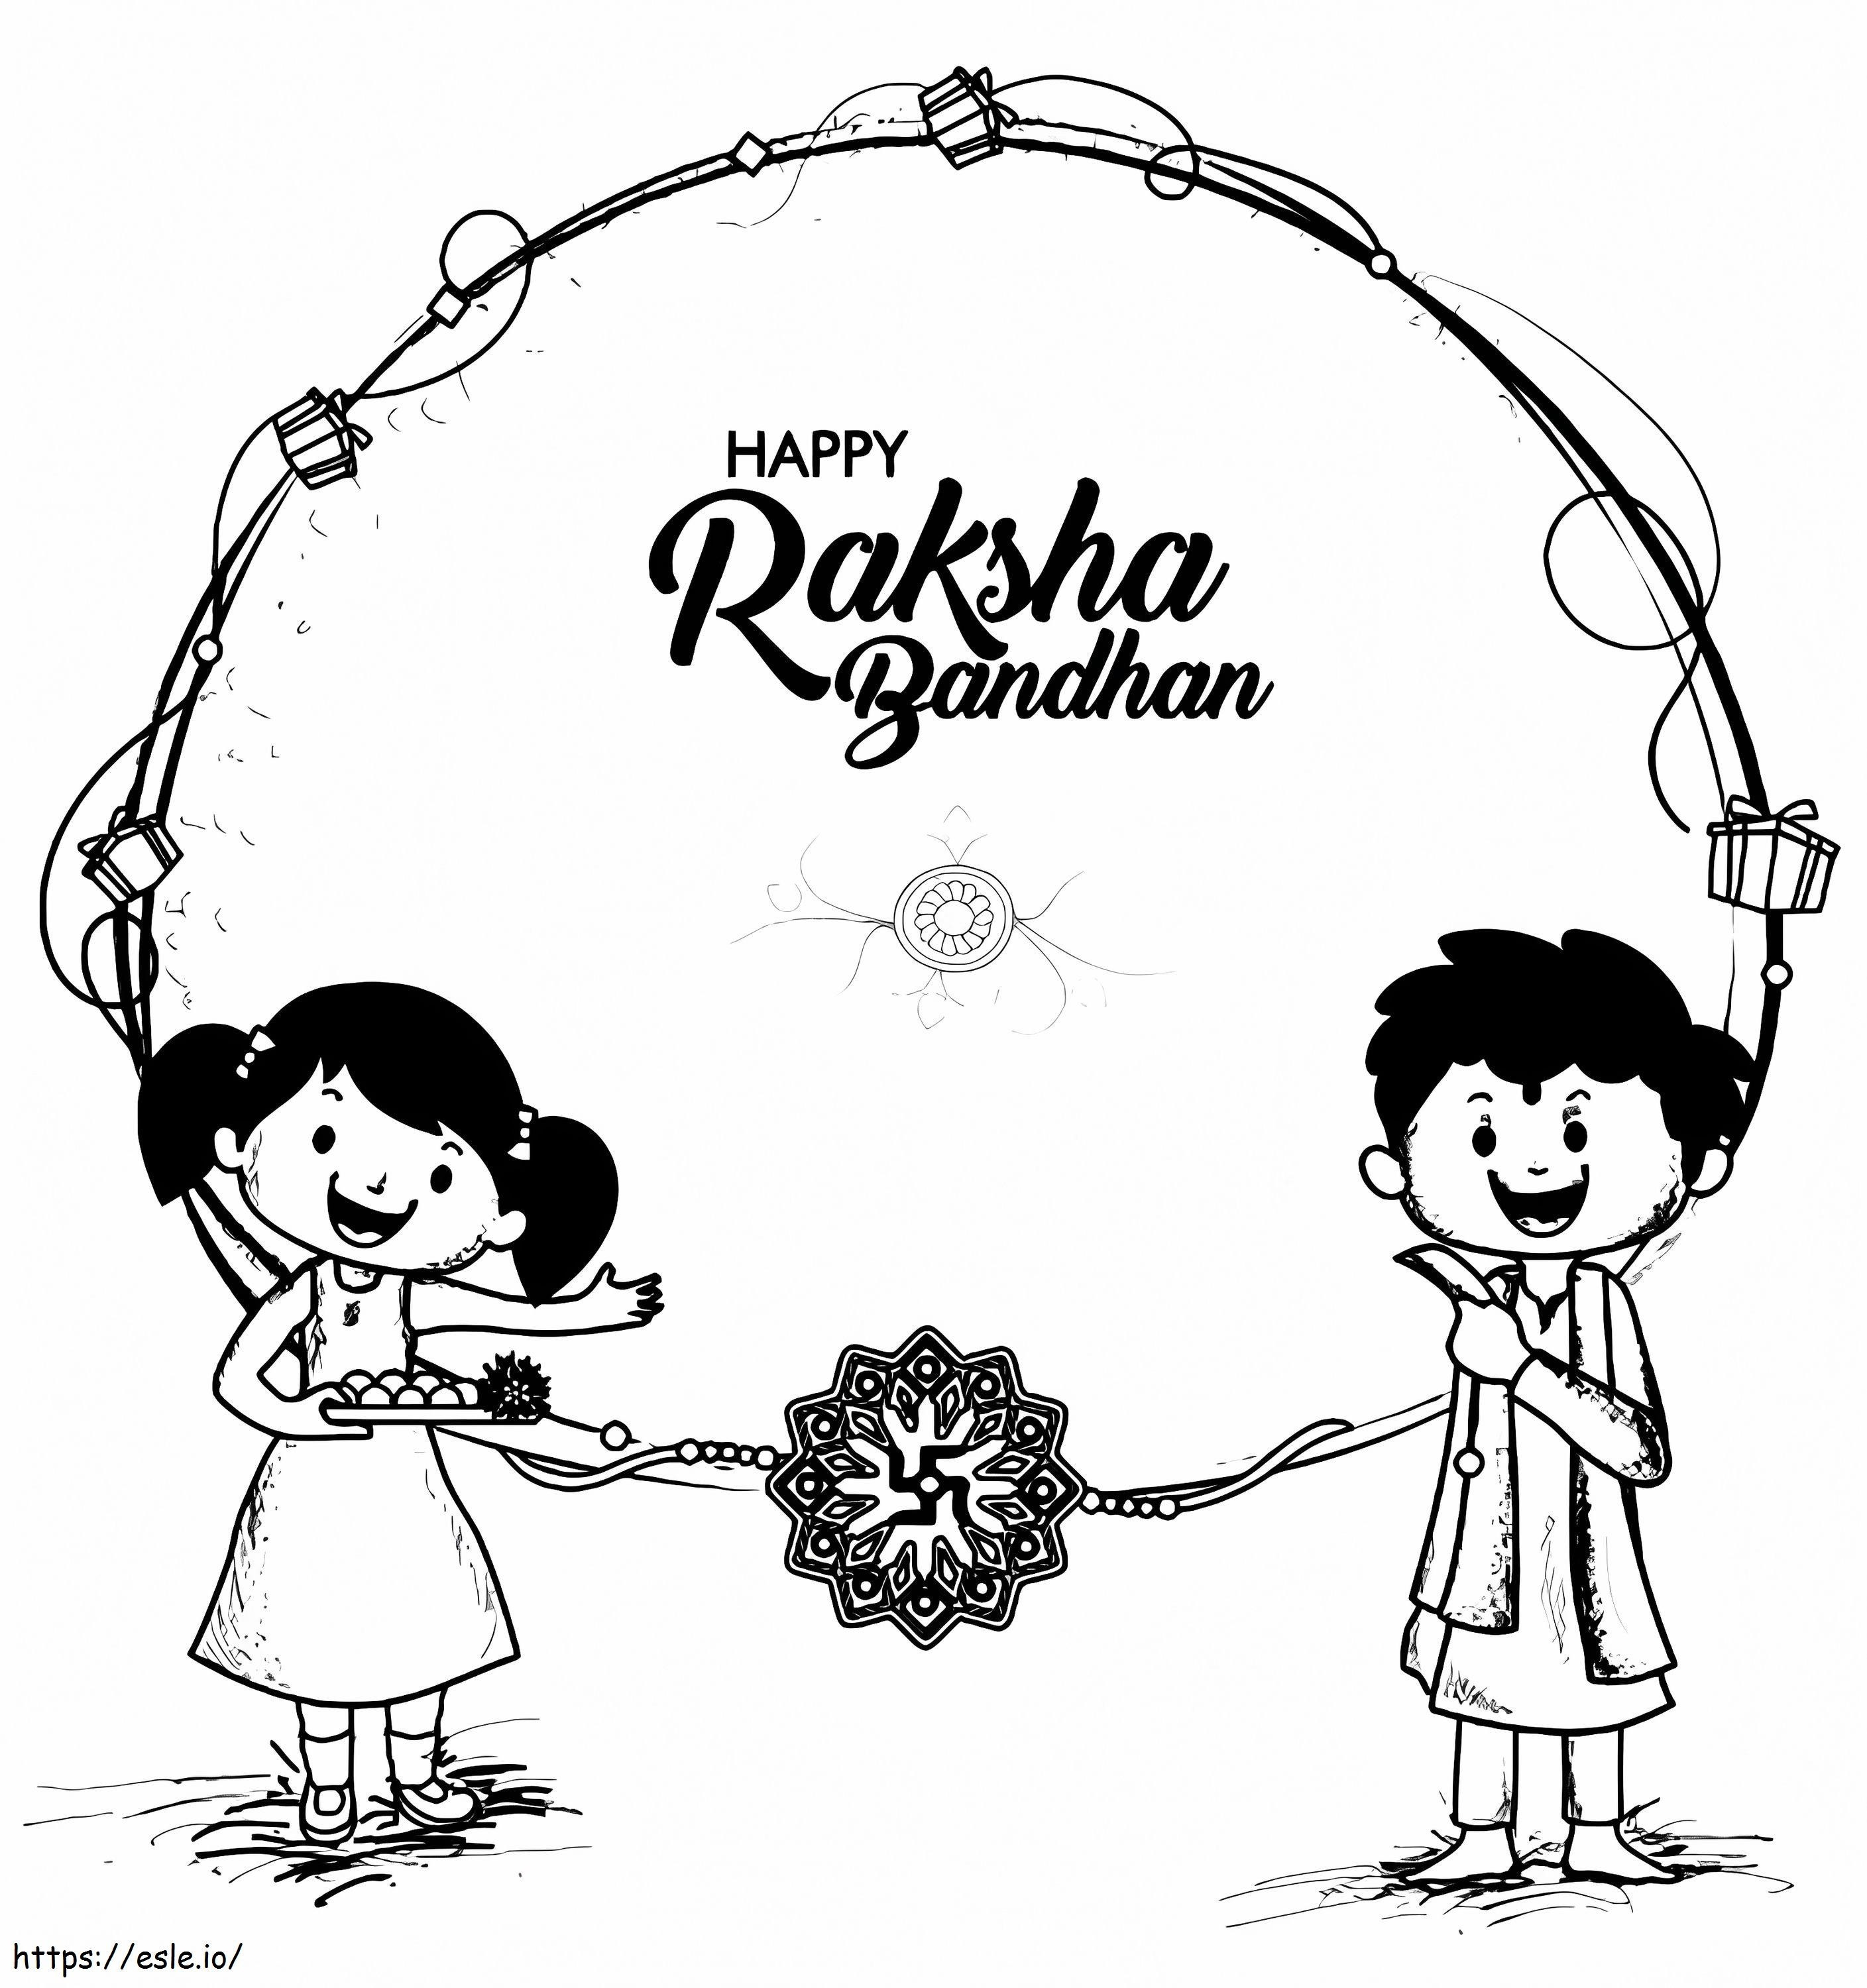 Raksha Bandhan 8 coloring page